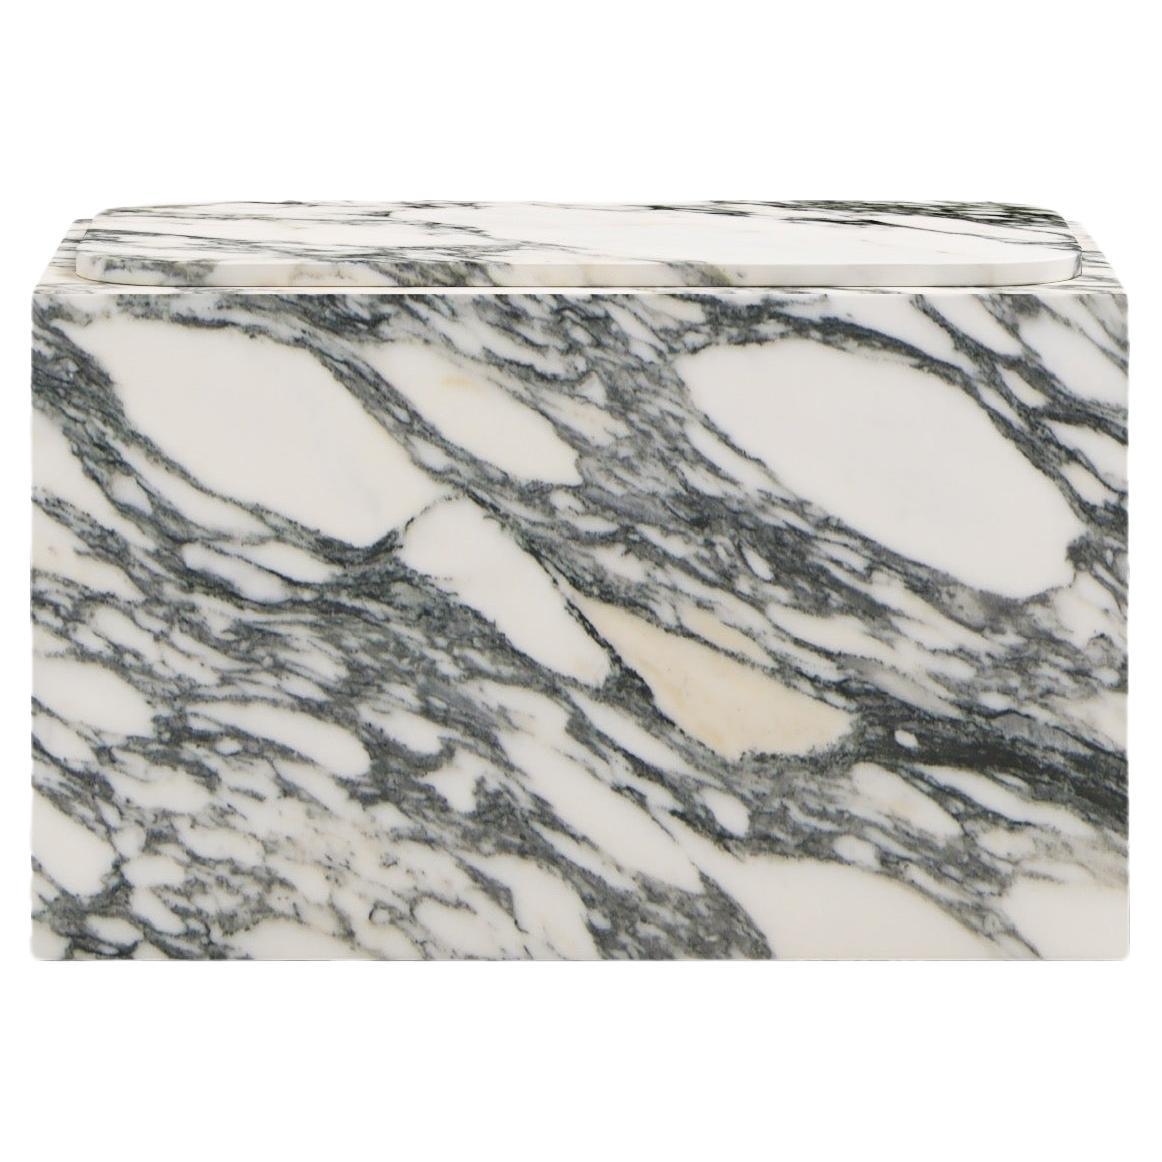 FORM(LA) Cubo Rectangle Side Table 30”L x 16"W x 19”H Arabescato Corchia Marble